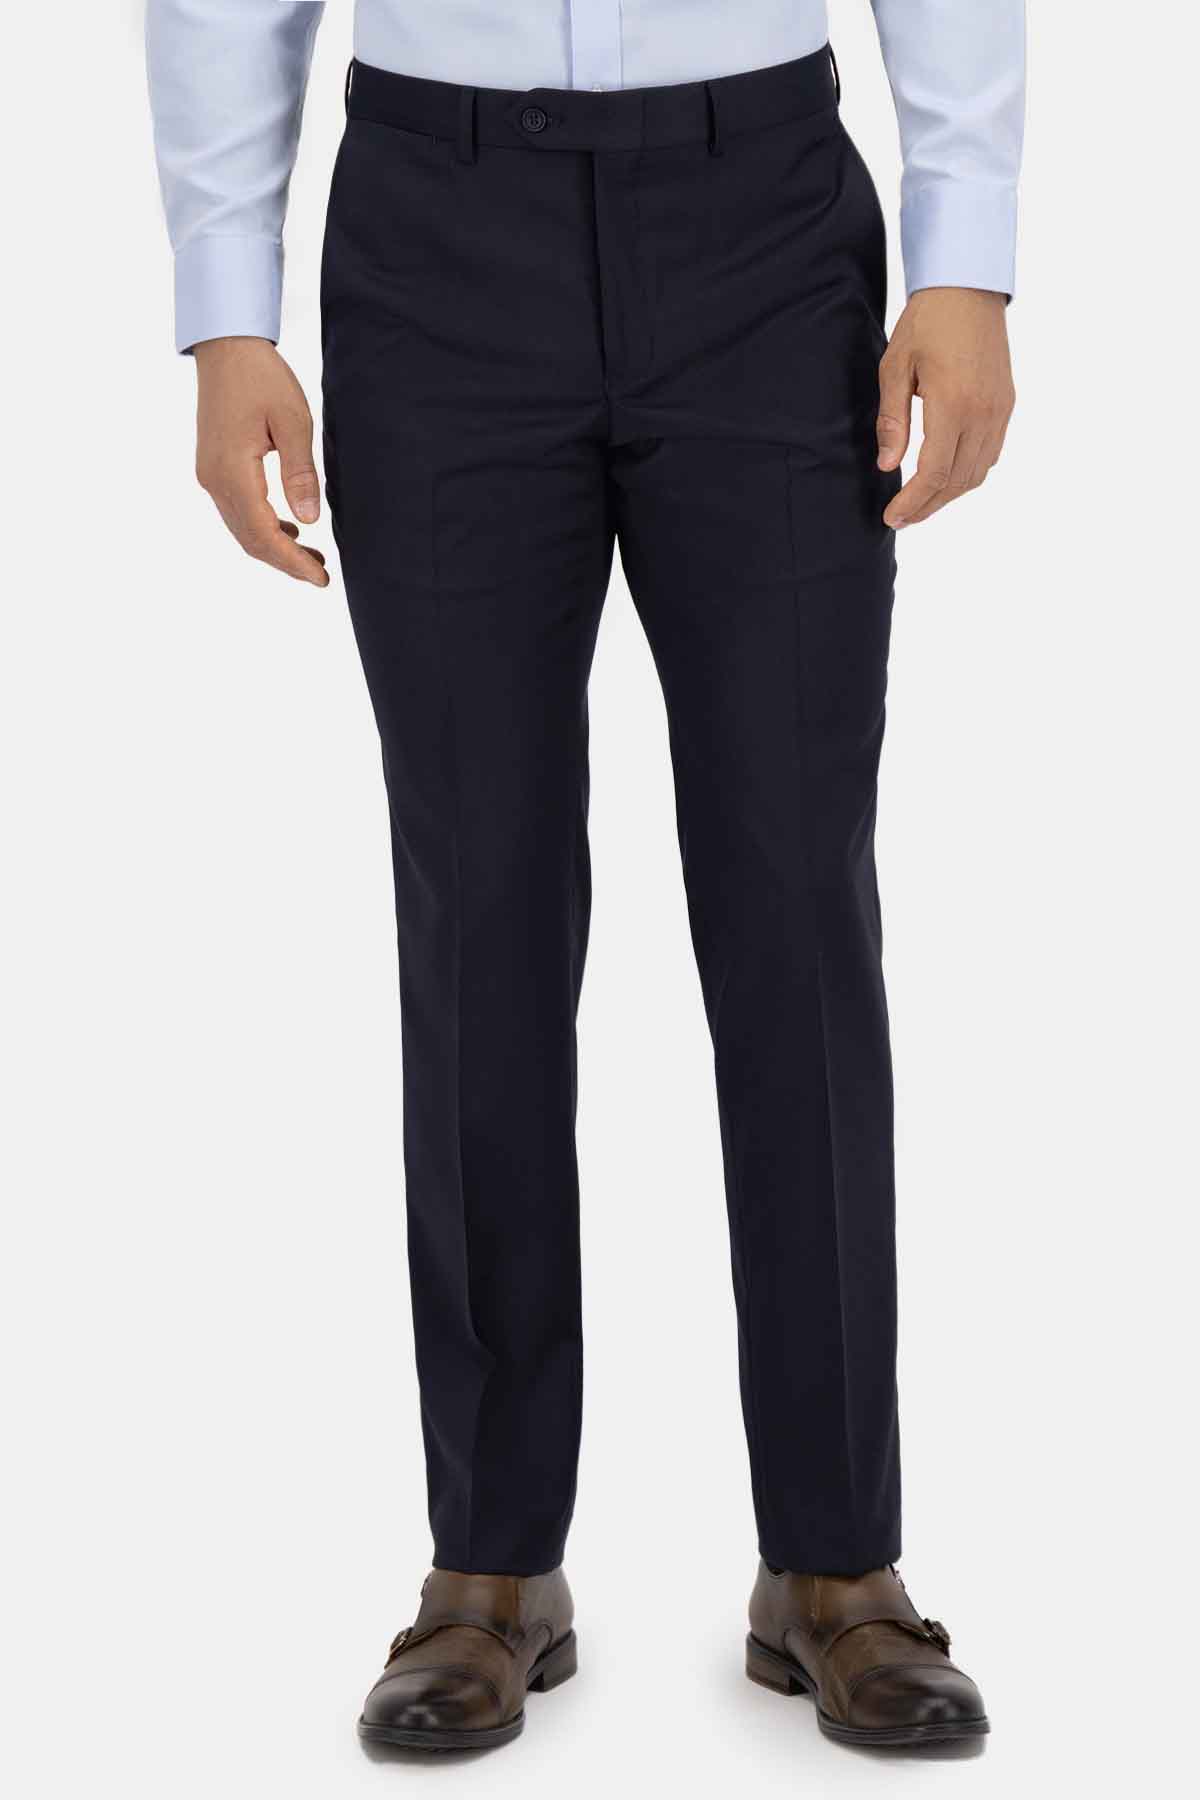 Pantalón formal Calderoni Color azul marino Contemporary fit